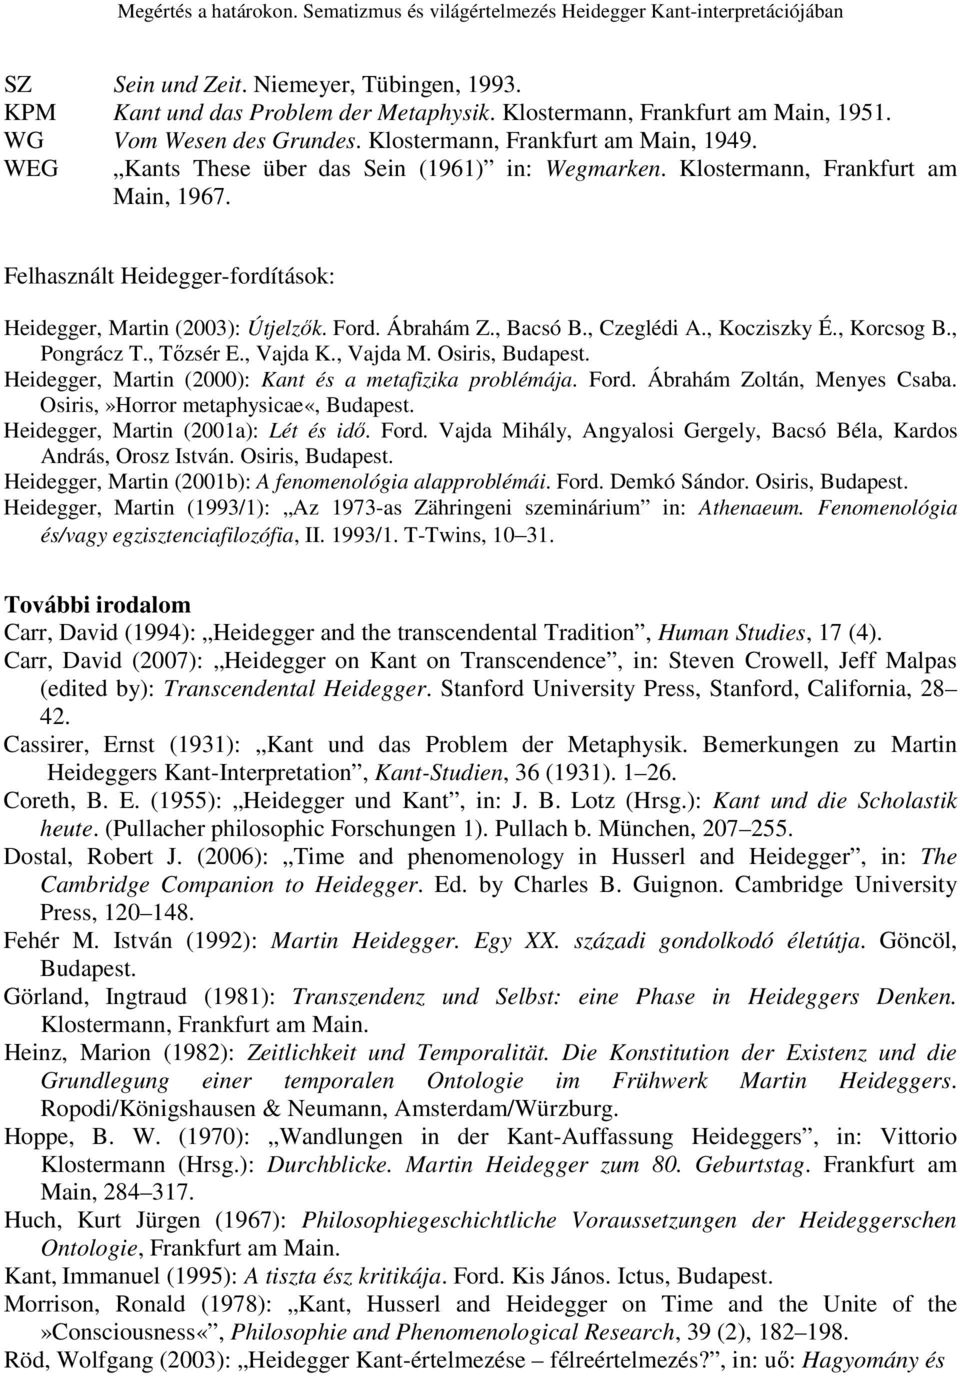 , Kocziszky É., Korcsog B., Pongrácz T., Tızsér E., Vajda K., Vajda M. Osiris, Budapest. Heidegger, Martin (2000): Kant és a metafizika problémája. Ford. Ábrahám Zoltán, Menyes Csaba.